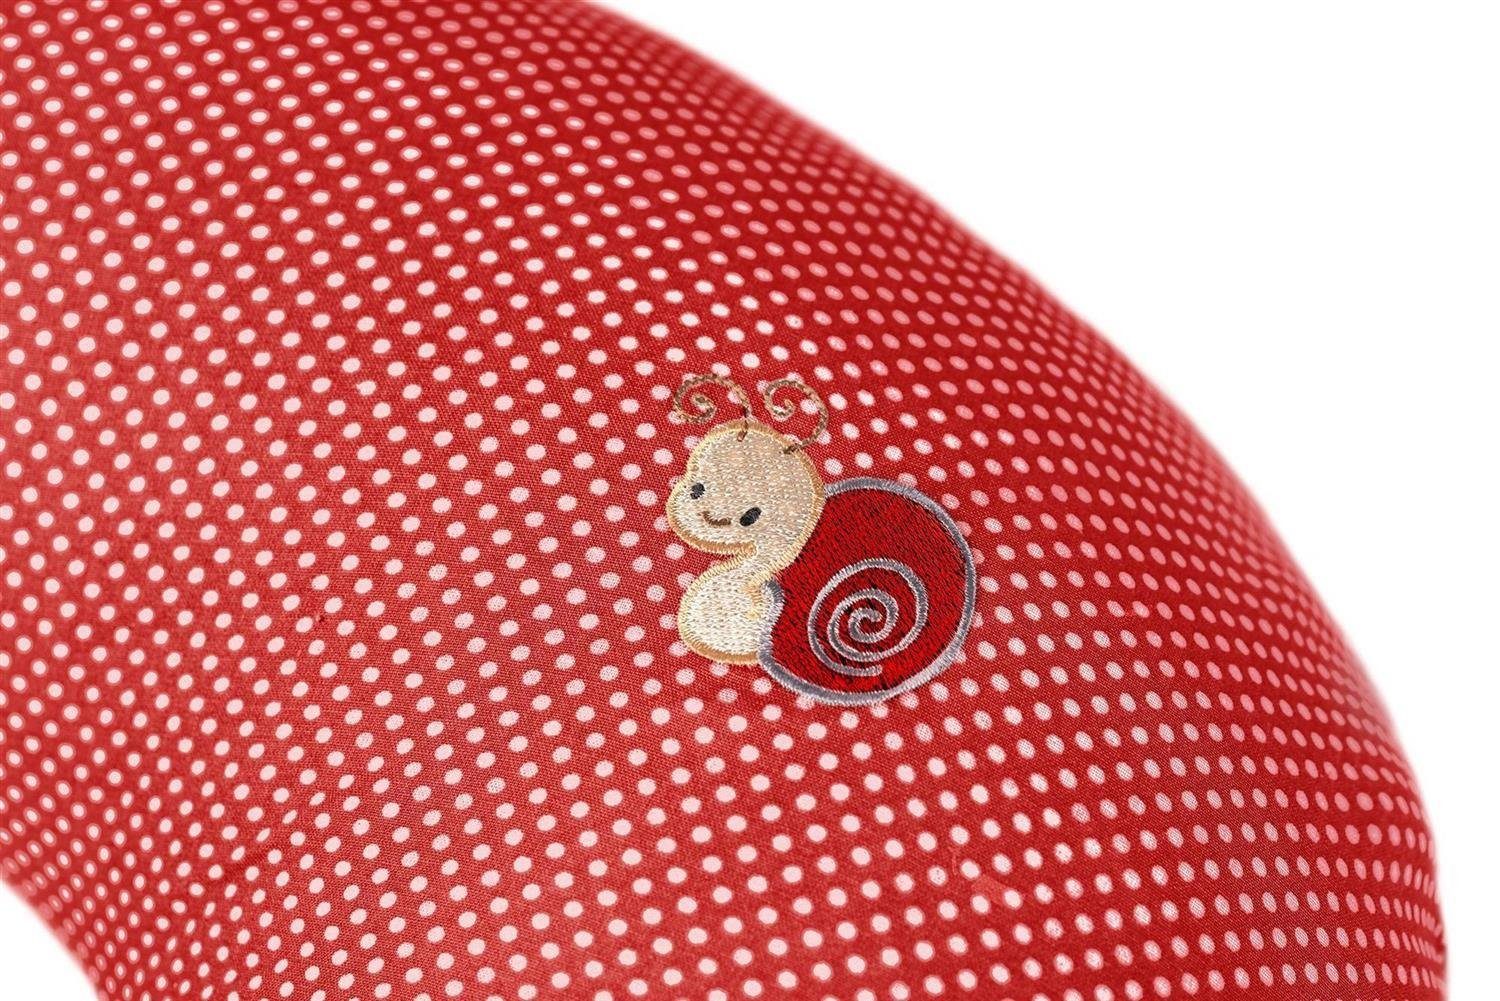 SEI Design Stillkissen Stillkissen Baumwolle 100% Stillmond Bezug Stillhörnchen, klein Schwangerschaftskissen mit Bezug, rot